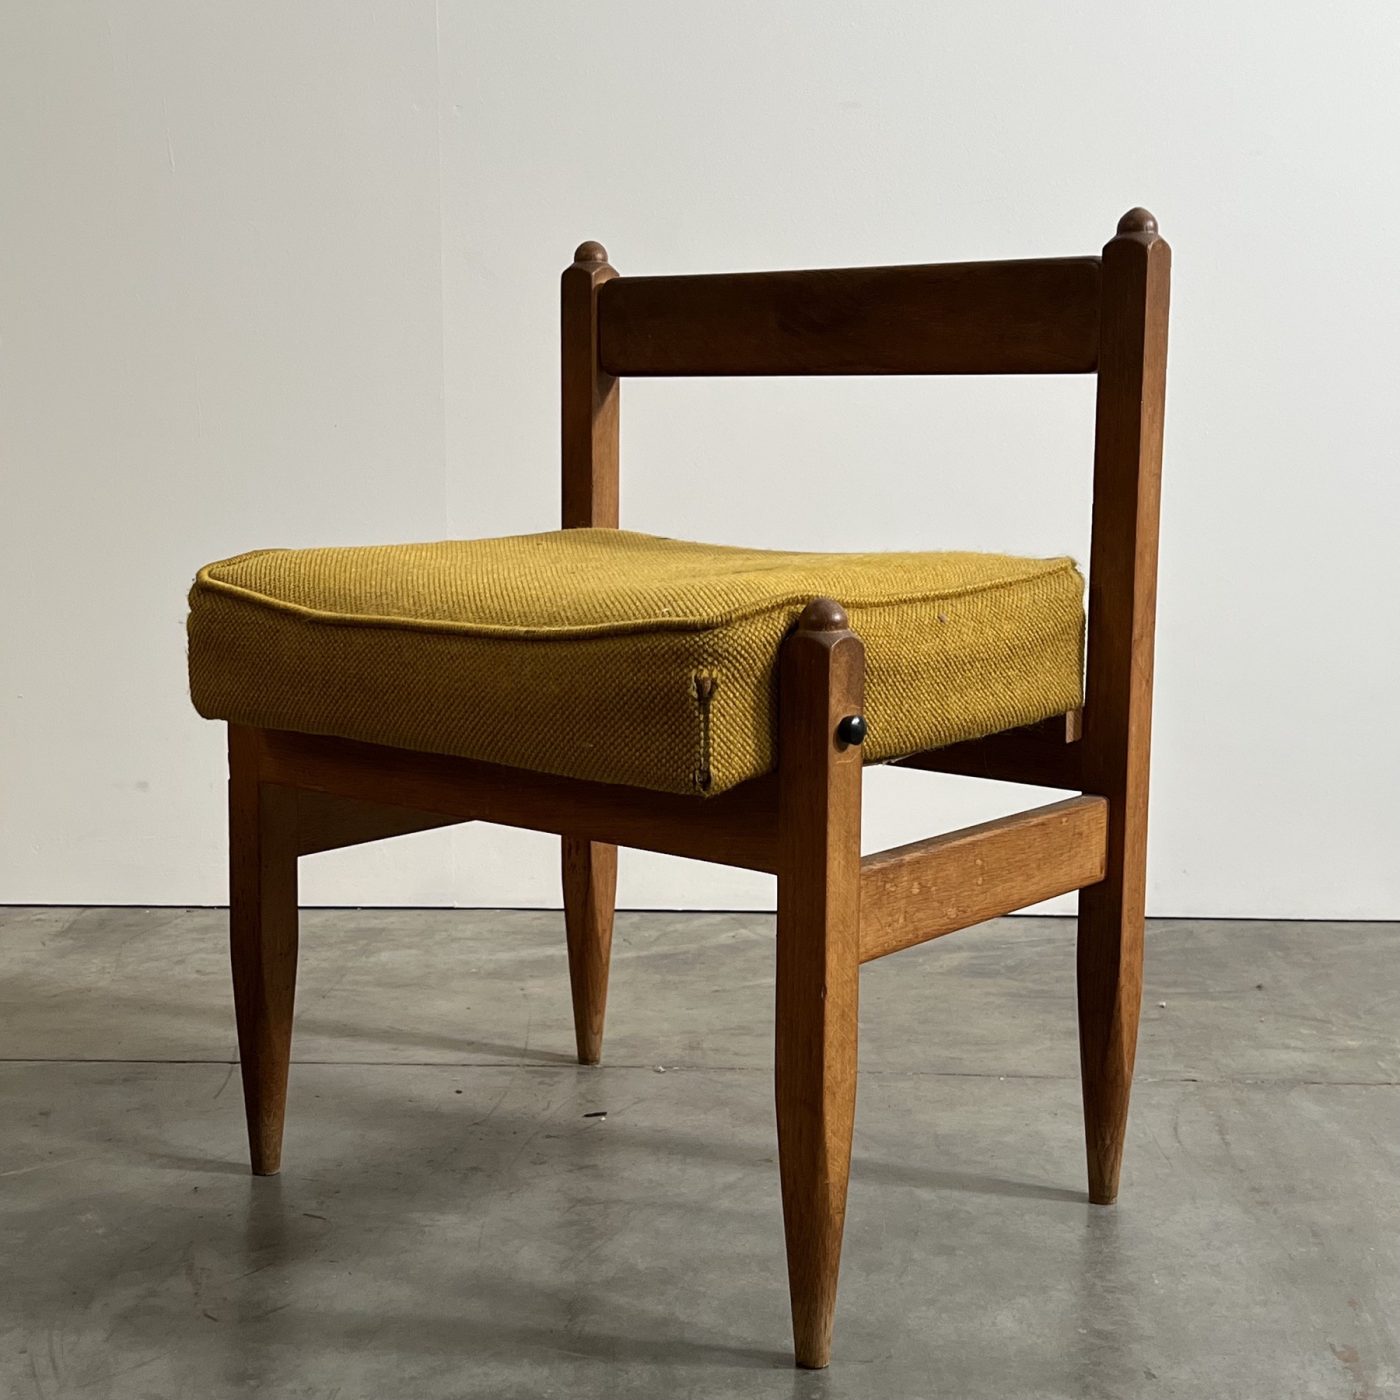 objet-vagabond-guillerme-stools0001